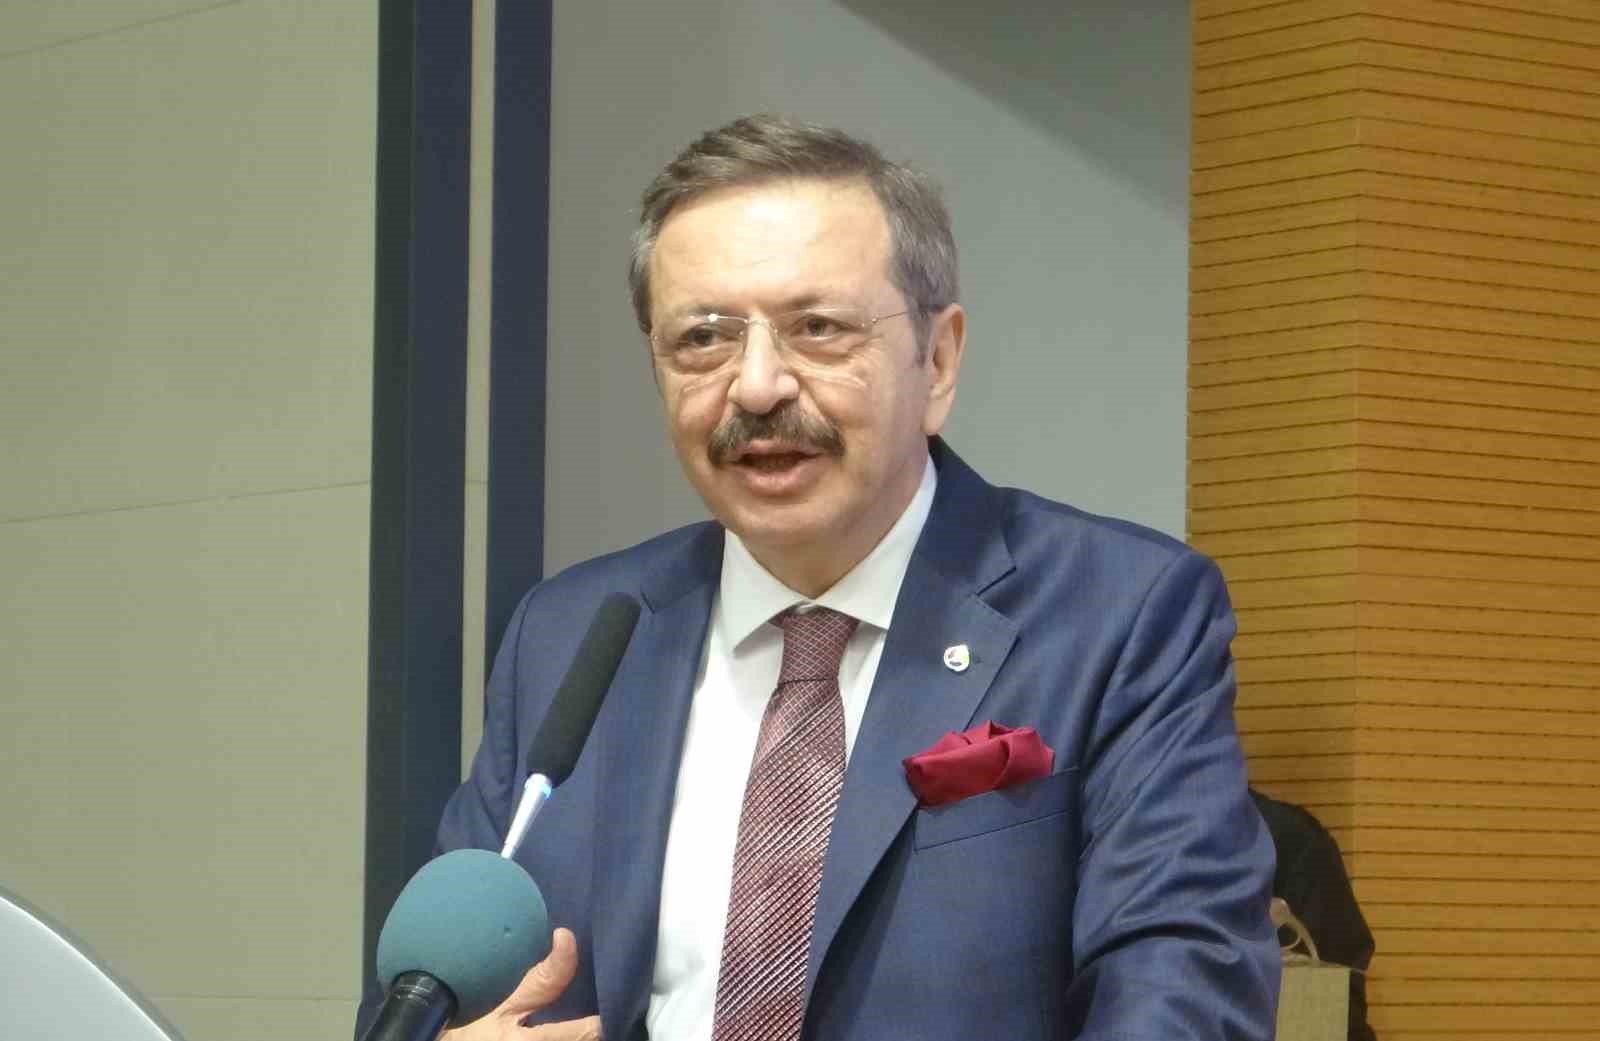 TOBB Başkanı Hisarcıklıoğlu: "Dünyadaki durgunluğa rağmen Adana yılın ilk 3 ayında ihracatını yüzde 9 artırdı"
